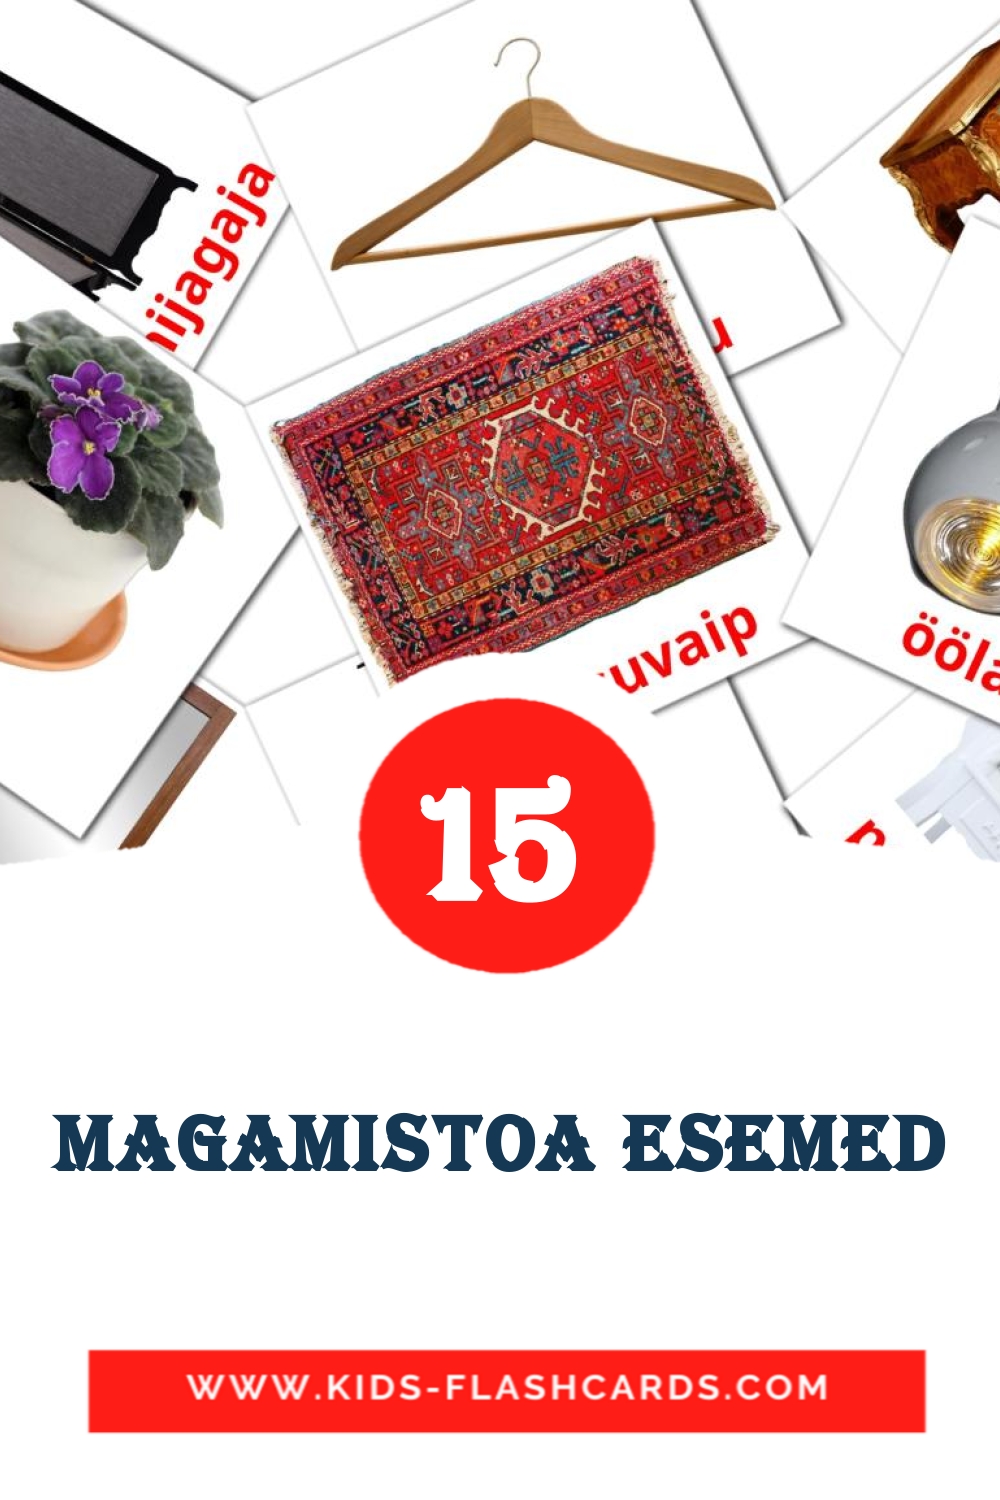 15 Cartões com Imagens de Magamistoa esemed para Jardim de Infância em estoniano